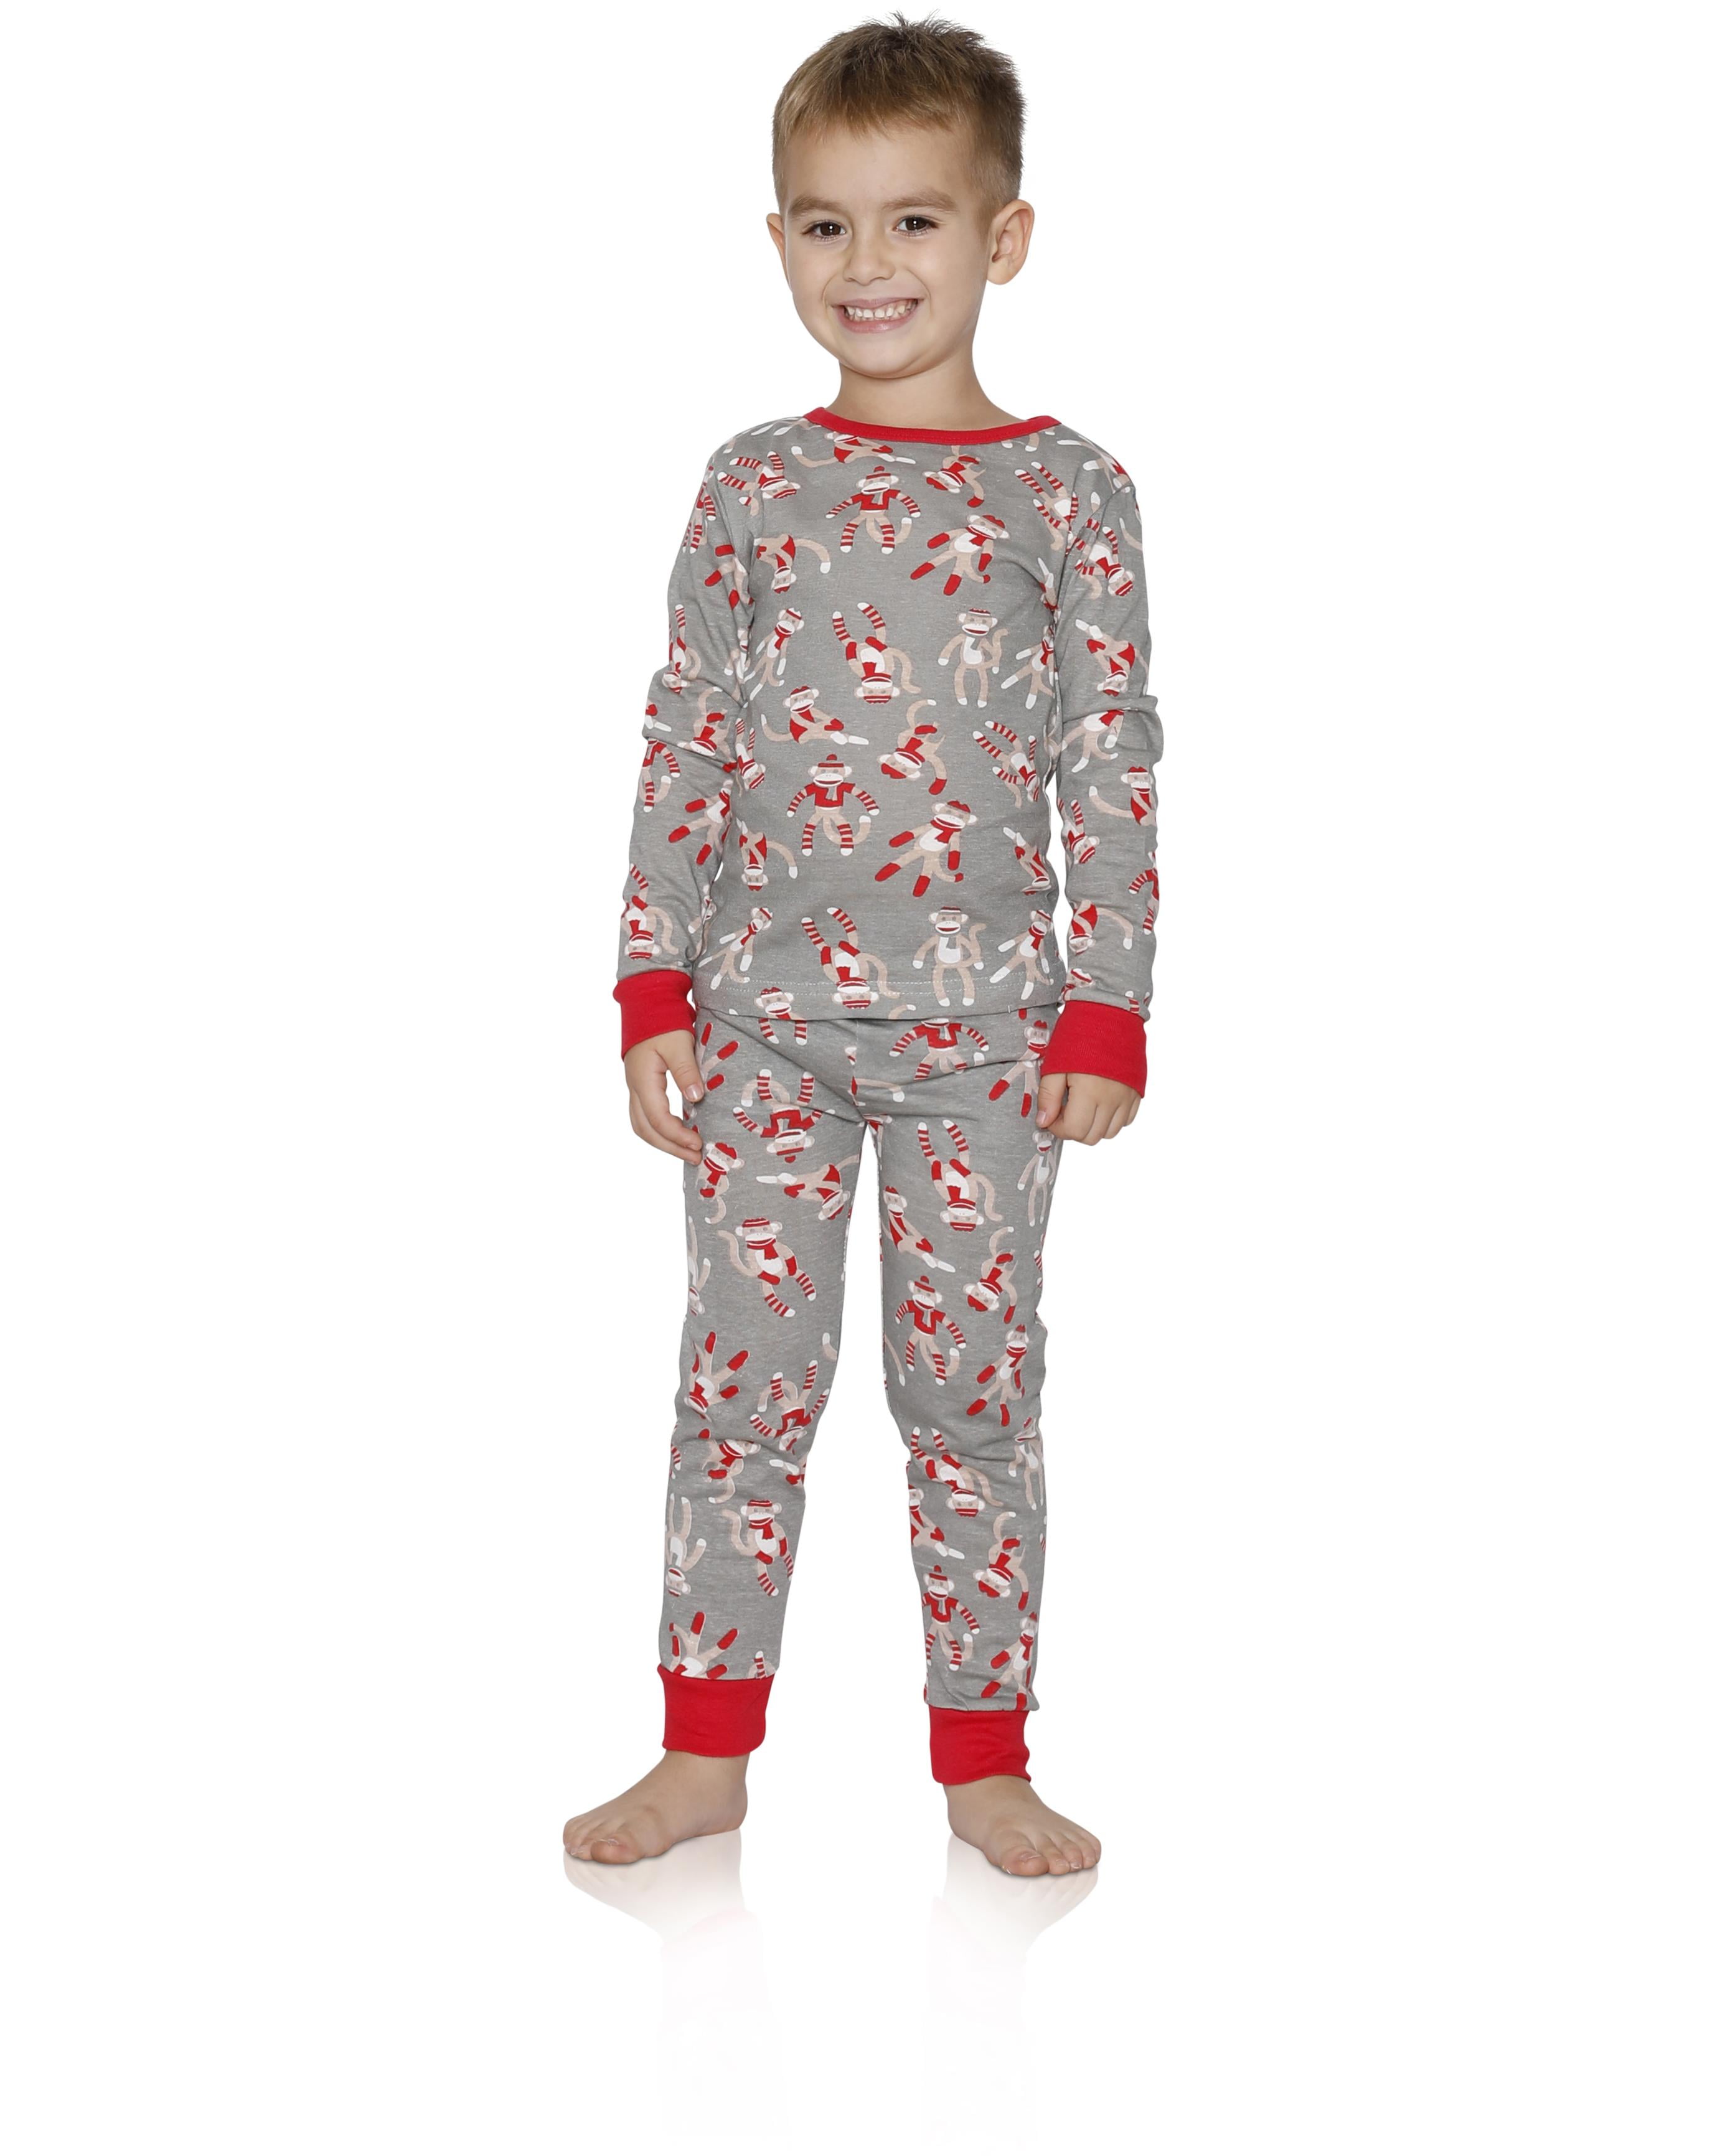 Boys Childs Star Wars Pyjamas Pajamas PJs Cotton Sleepwear Nightwear Age 4-10 